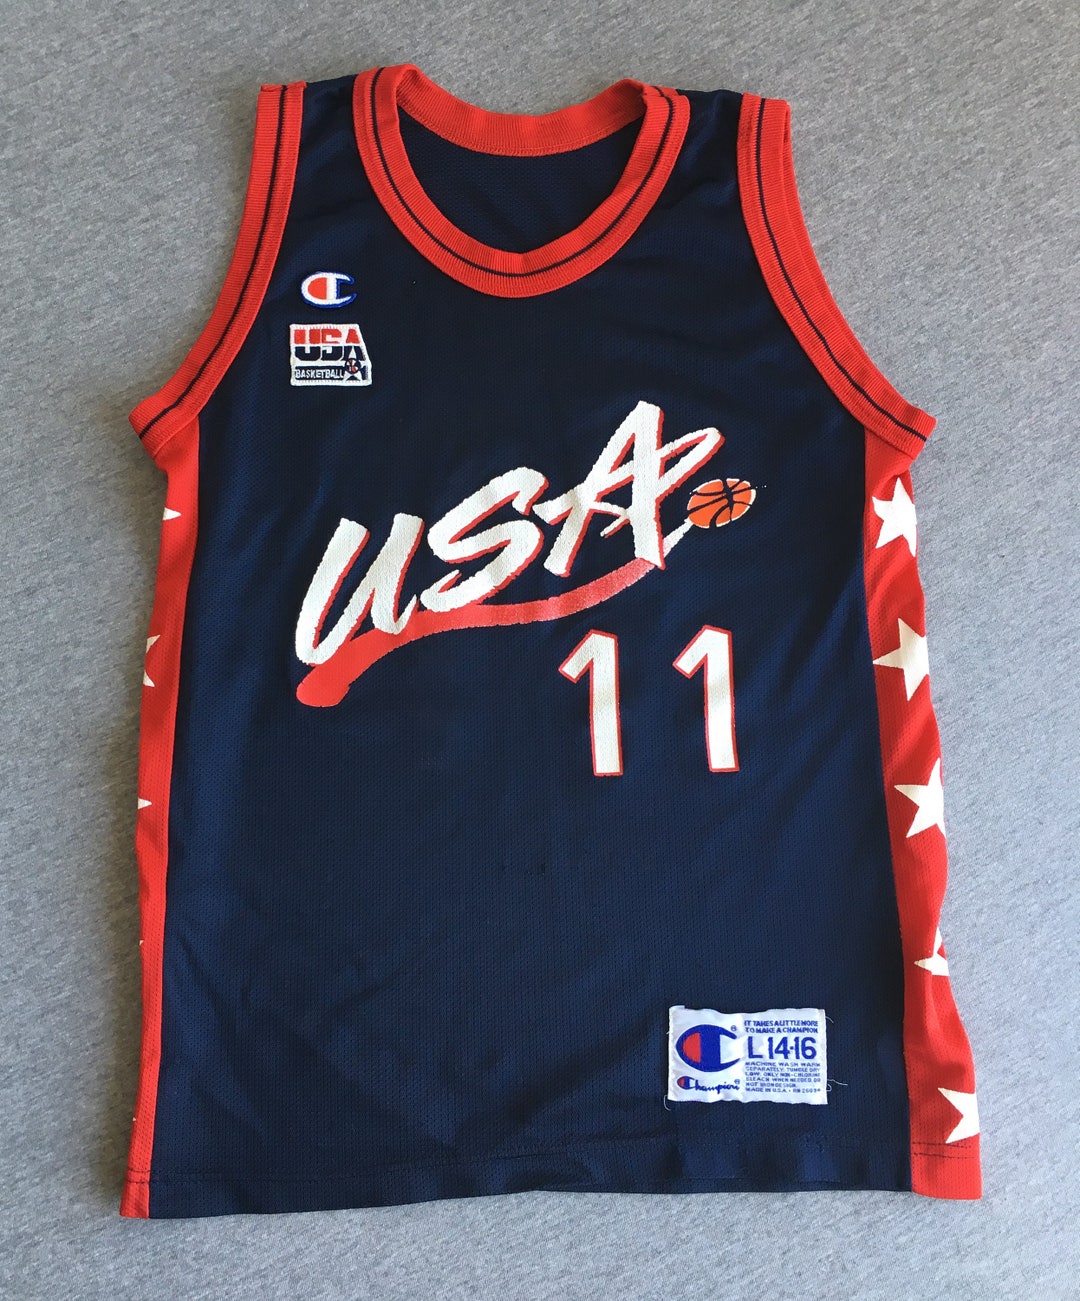 USA Basketball Jerseys, USA Basketball Jerseys